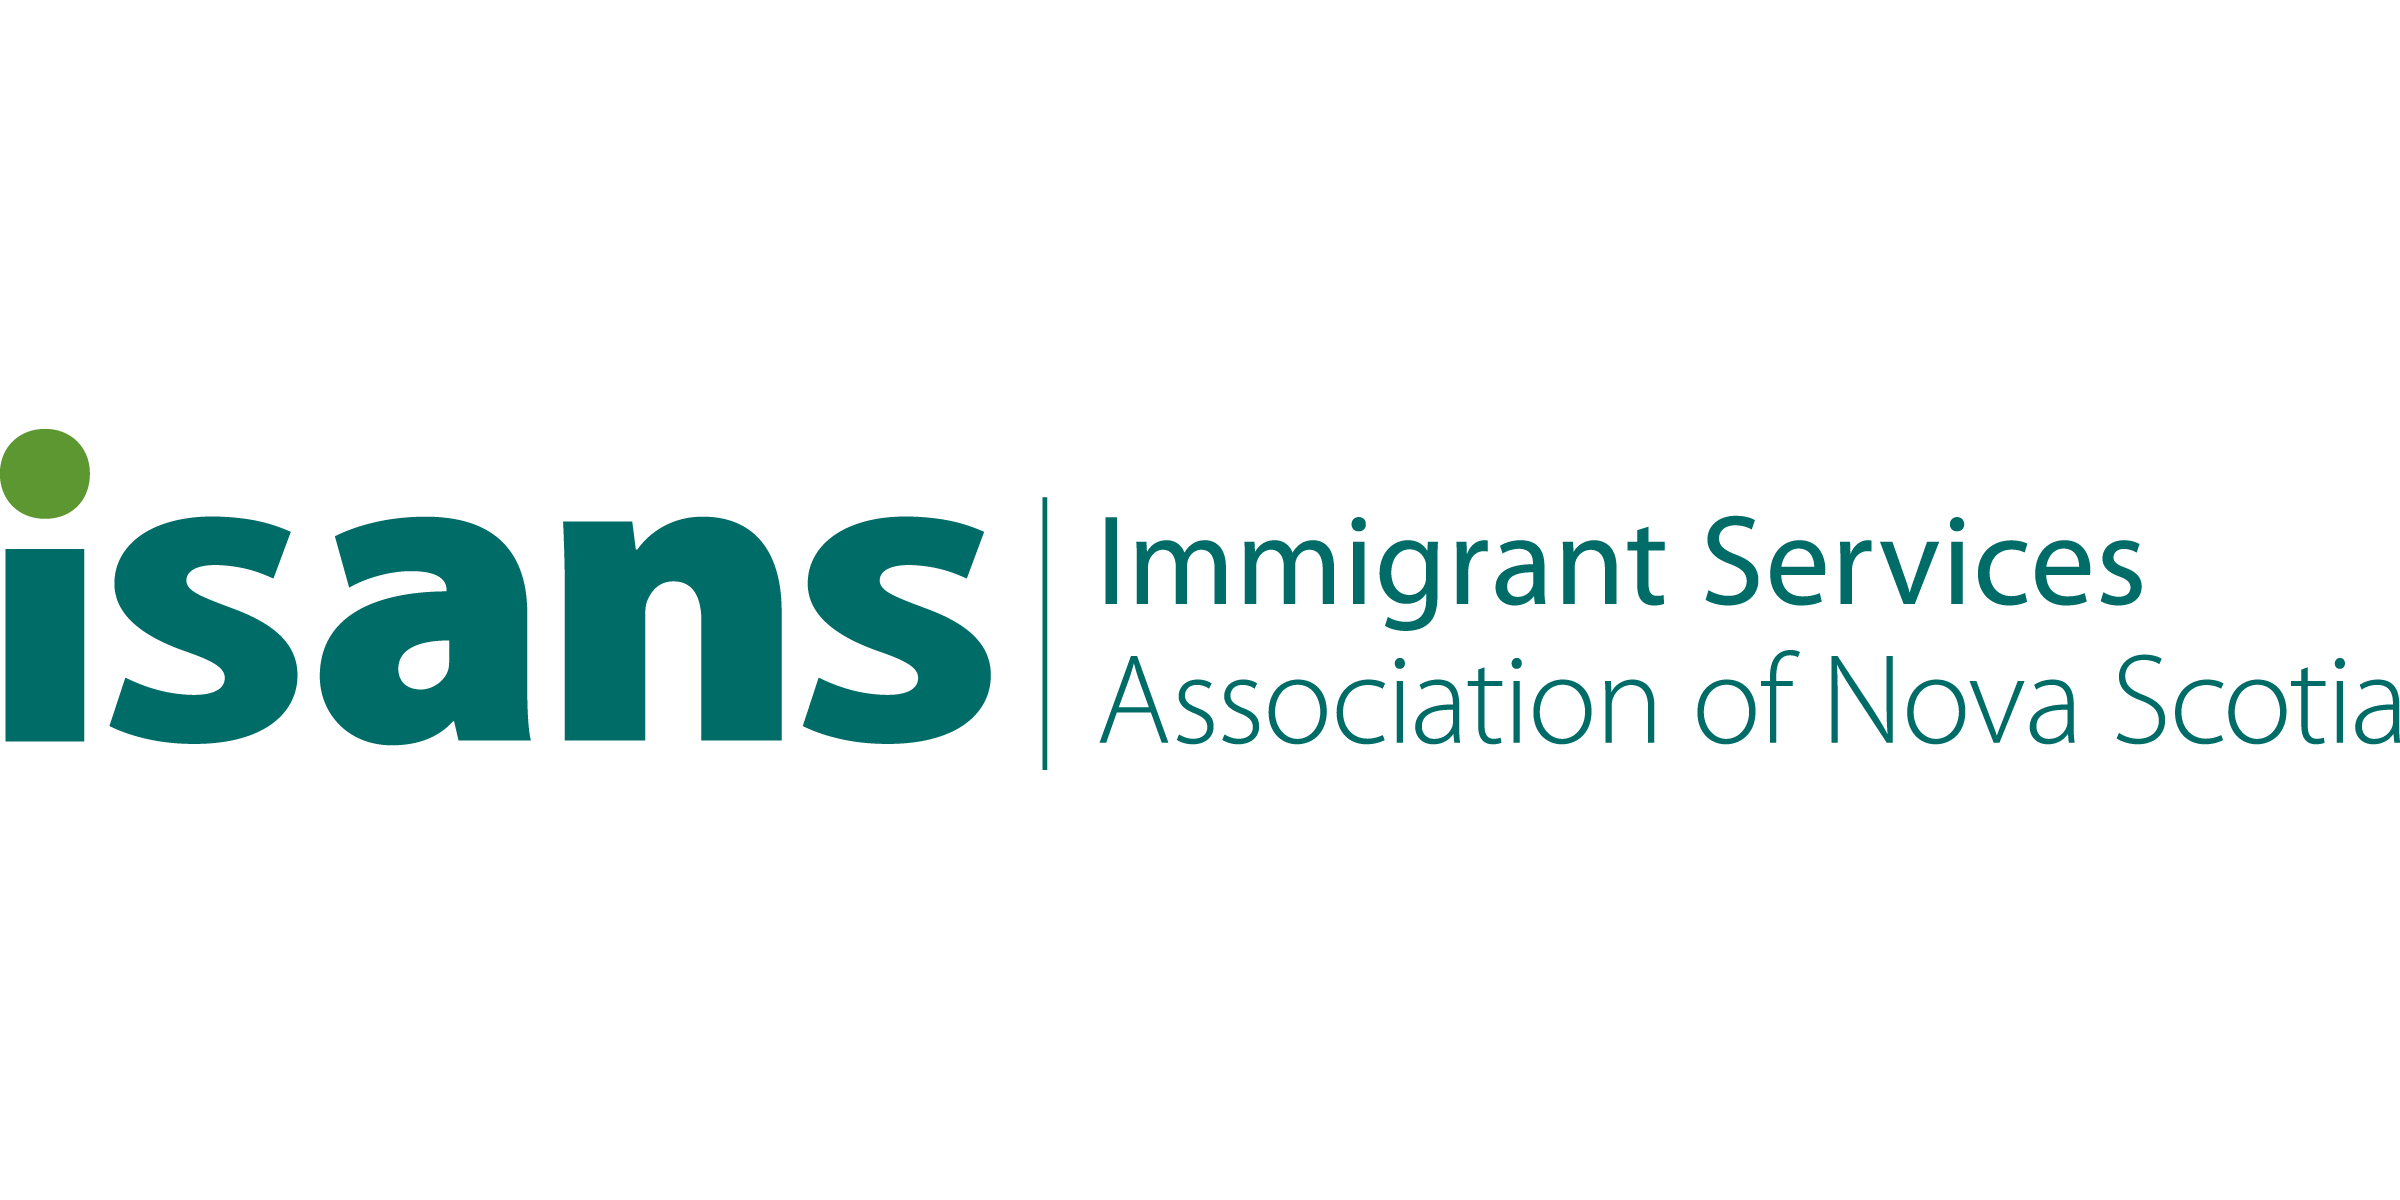 Immigrant Services Association of Nova Scotia